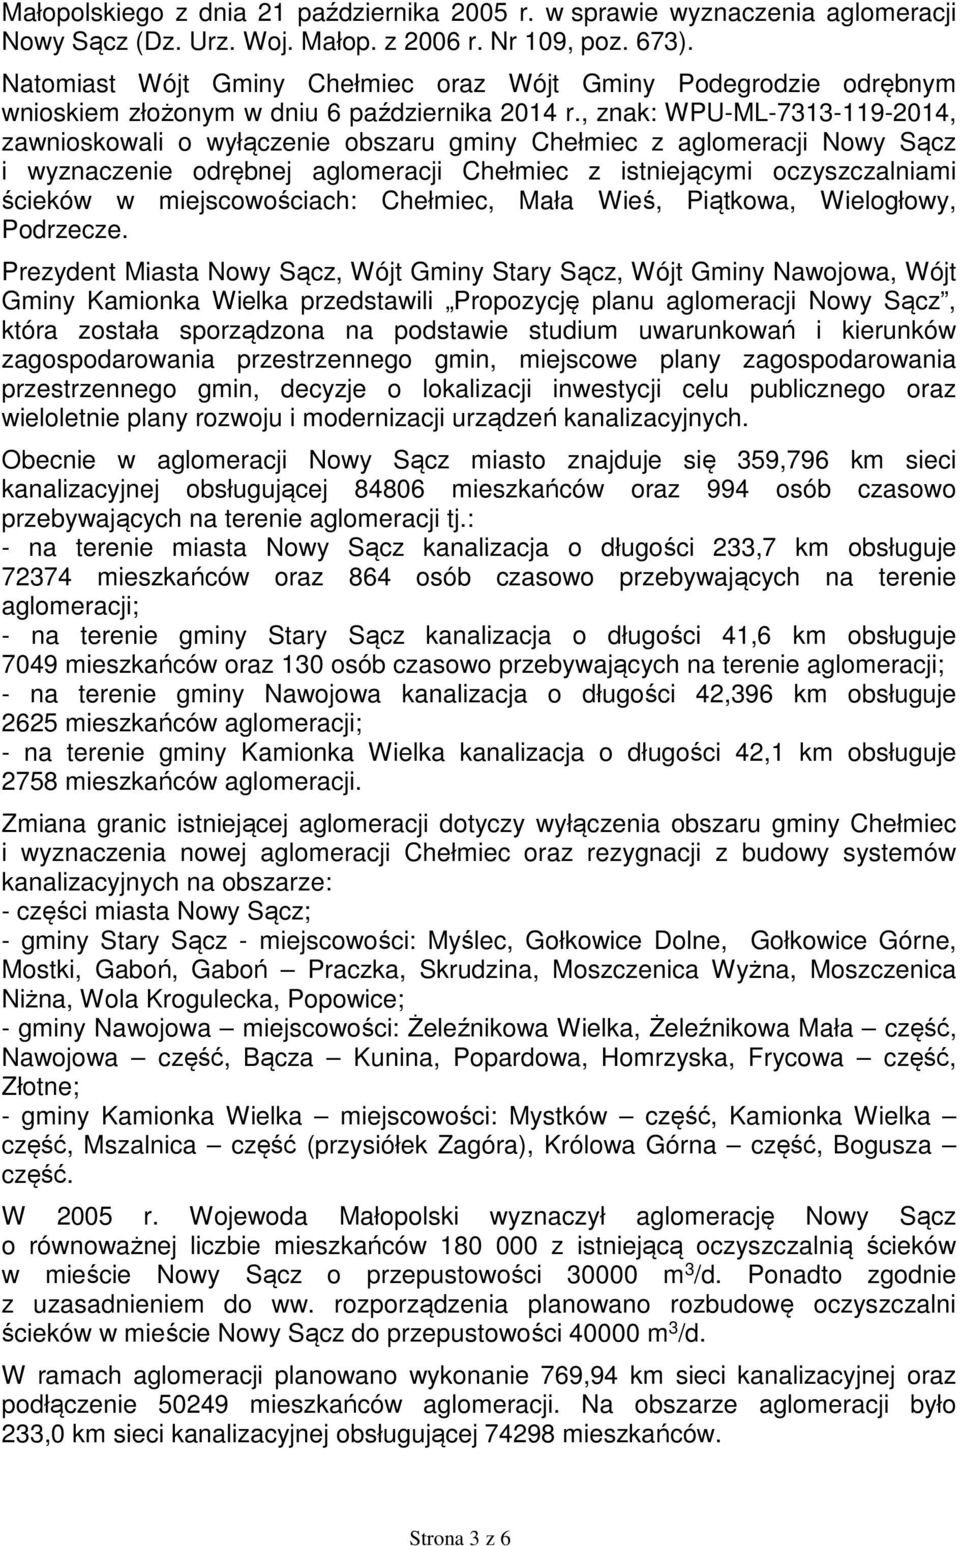 , znak: WPU-ML-7313-119-2014, zawnioskowali o wyłączenie obszaru gminy Chełmiec z aglomeracji Nowy Sącz i wyznaczenie odrębnej aglomeracji Chełmiec z istniejącymi oczyszczalniami ścieków w